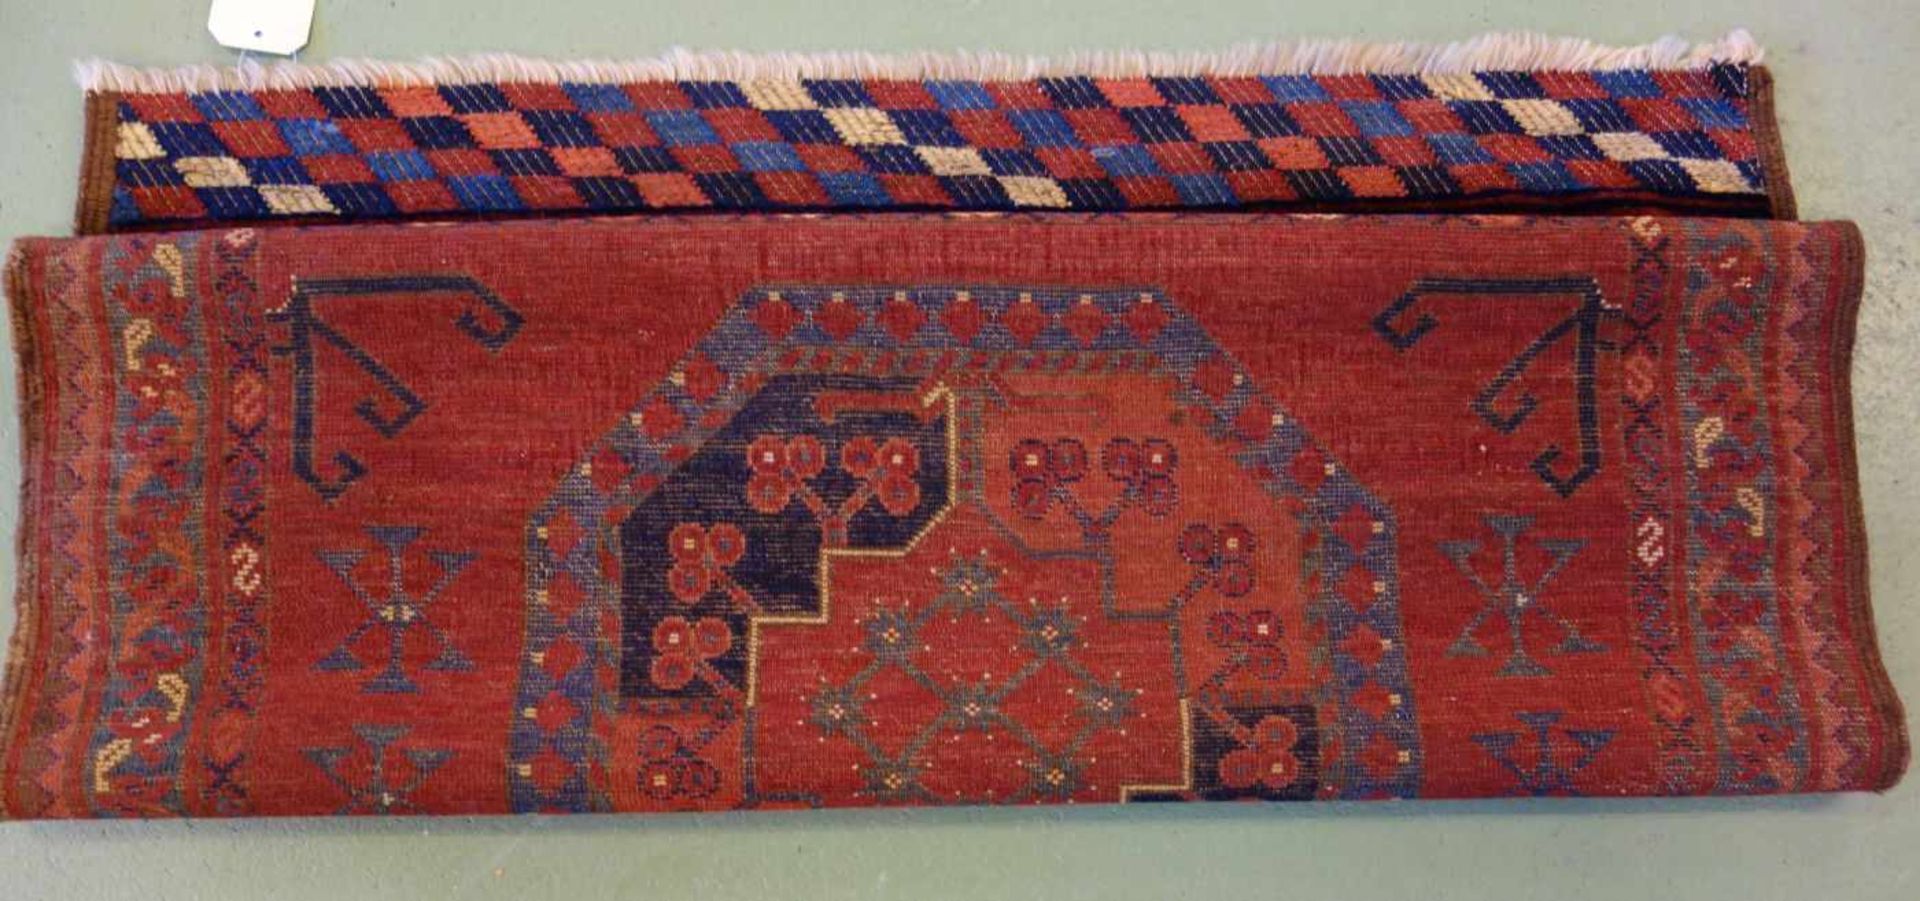 SELTENER KLEINER TEPPICH / ERSARI / carpet, Turkmenen / Westturkestan, wohl 2. H. 19. Jh., wohl - Image 4 of 12